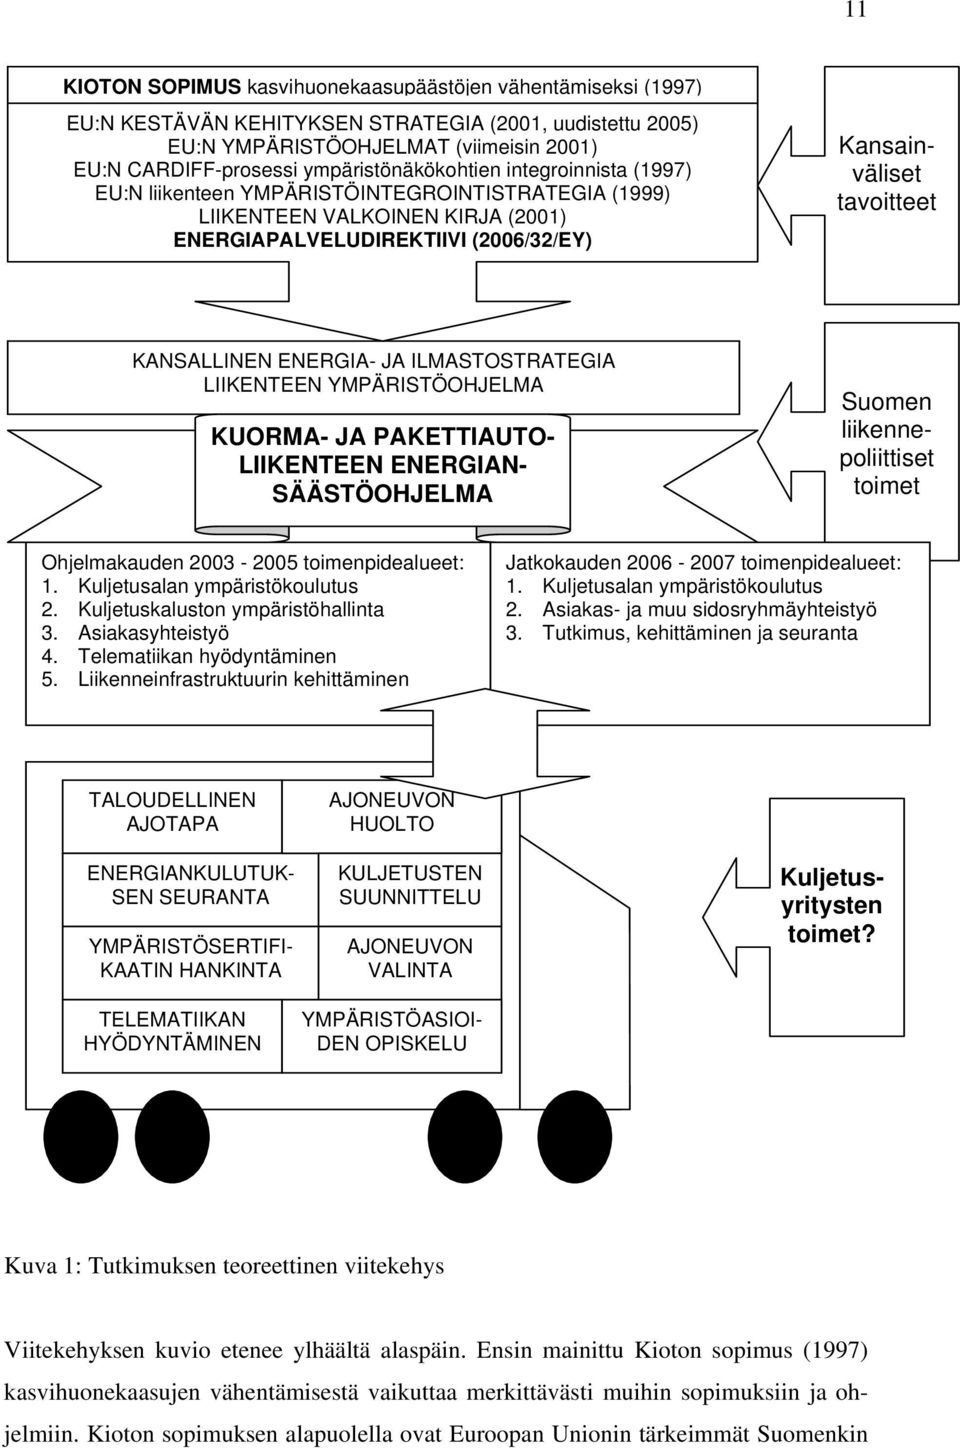 KANSALLINEN ENERGIA- JA ILMASTOSTRATEGIA LIIKENTEEN YMPÄRISTÖOHJELMA KUORMA- JA PAKETTIAUTO- LIIKENTEEN ENERGIAN- SÄÄSTÖOHJELMA Suomen liikennepoliittiset toimet Ohjelmakauden 2003-2005